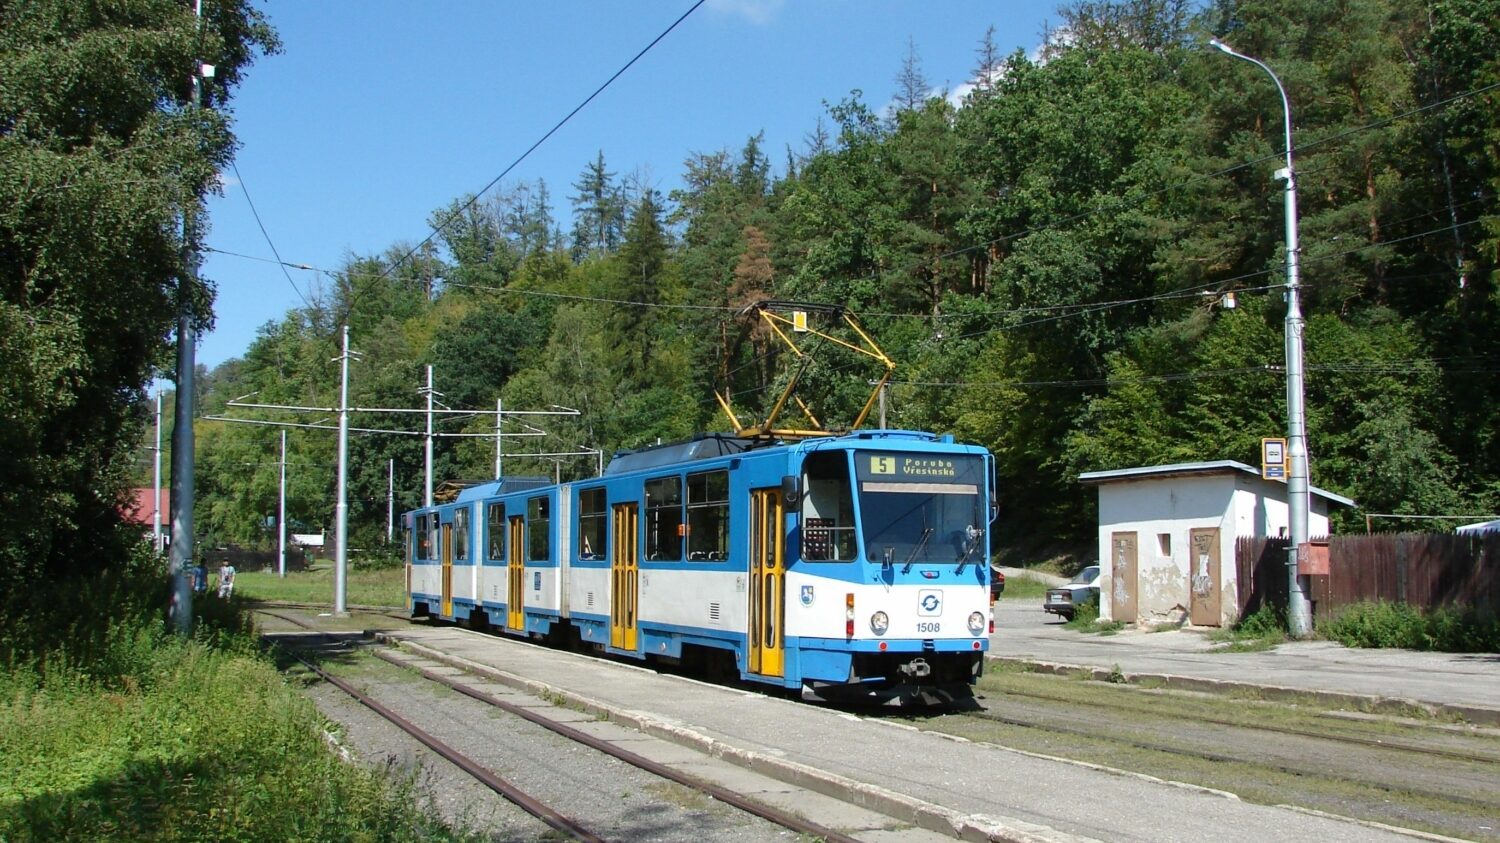 Ostrava pořídila celkem 16 tramvají KT8D5, včetně jednoho ze dvou prototypů. V letech 2004 až 2011 byly všechny vozy rekonstruovány na jednosměrné provedení. Na snímku vidíme poslední z tramvají v původním obousměrném provedení odpočívat v červencovém slunci v roce 2008 na konečné Zátiší. (foto: Libor Hinčica)